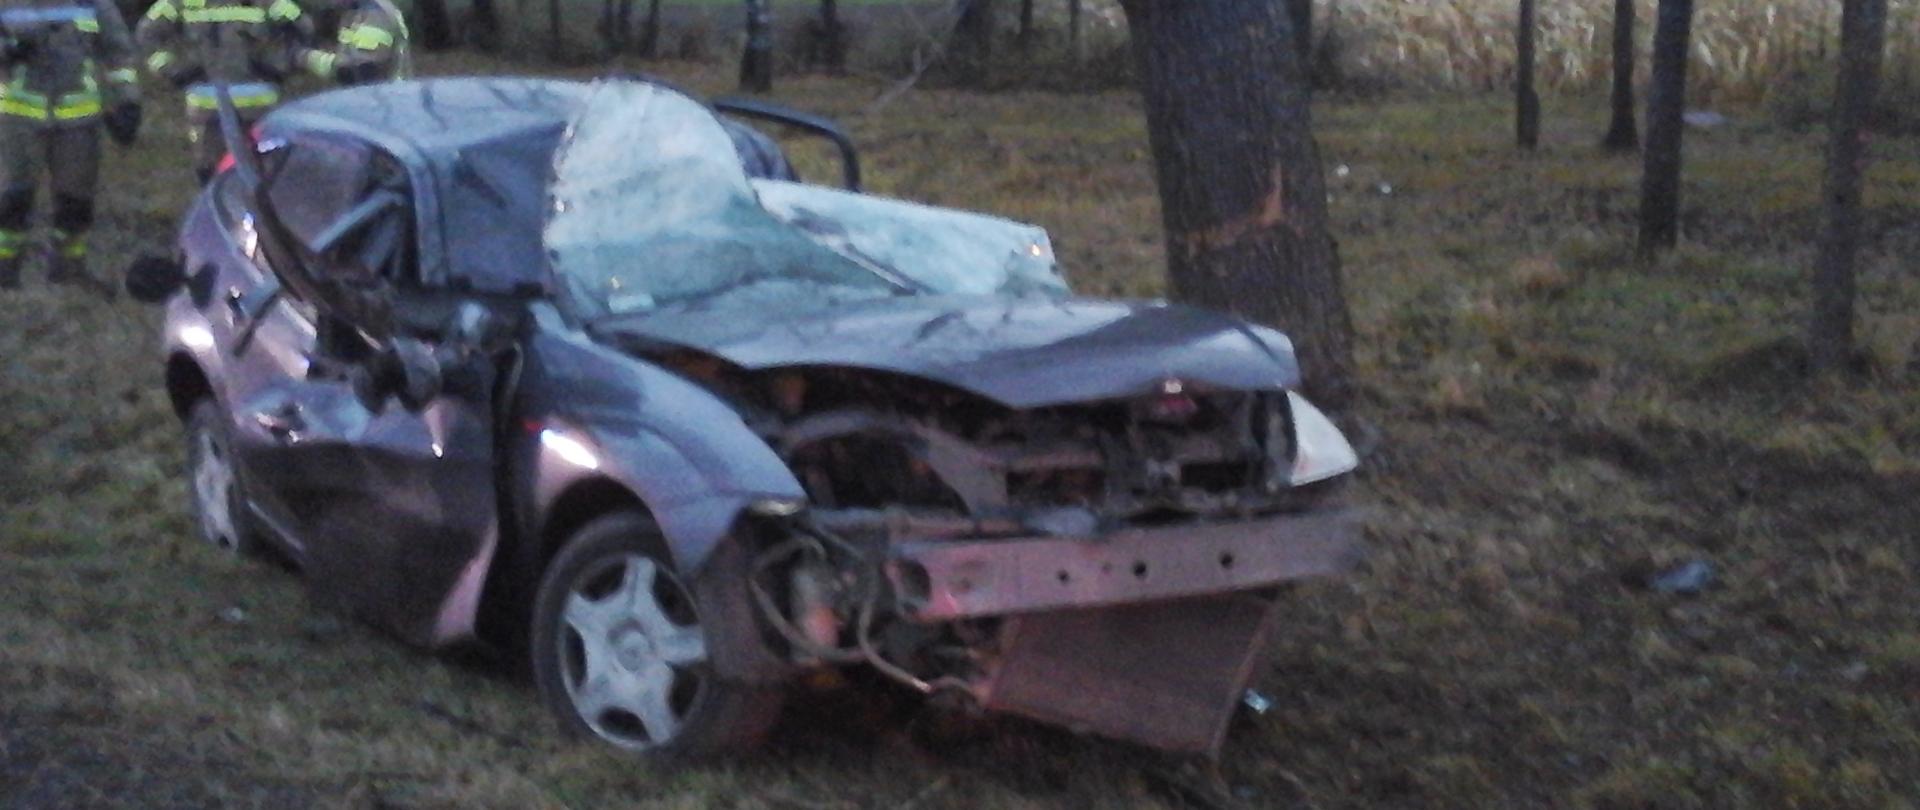 Rozbity samochód osobowy stojący w przydrożnym rowie. Samochód całkowicie zniszczony po uderzeniu w przydrożne drzewo. 